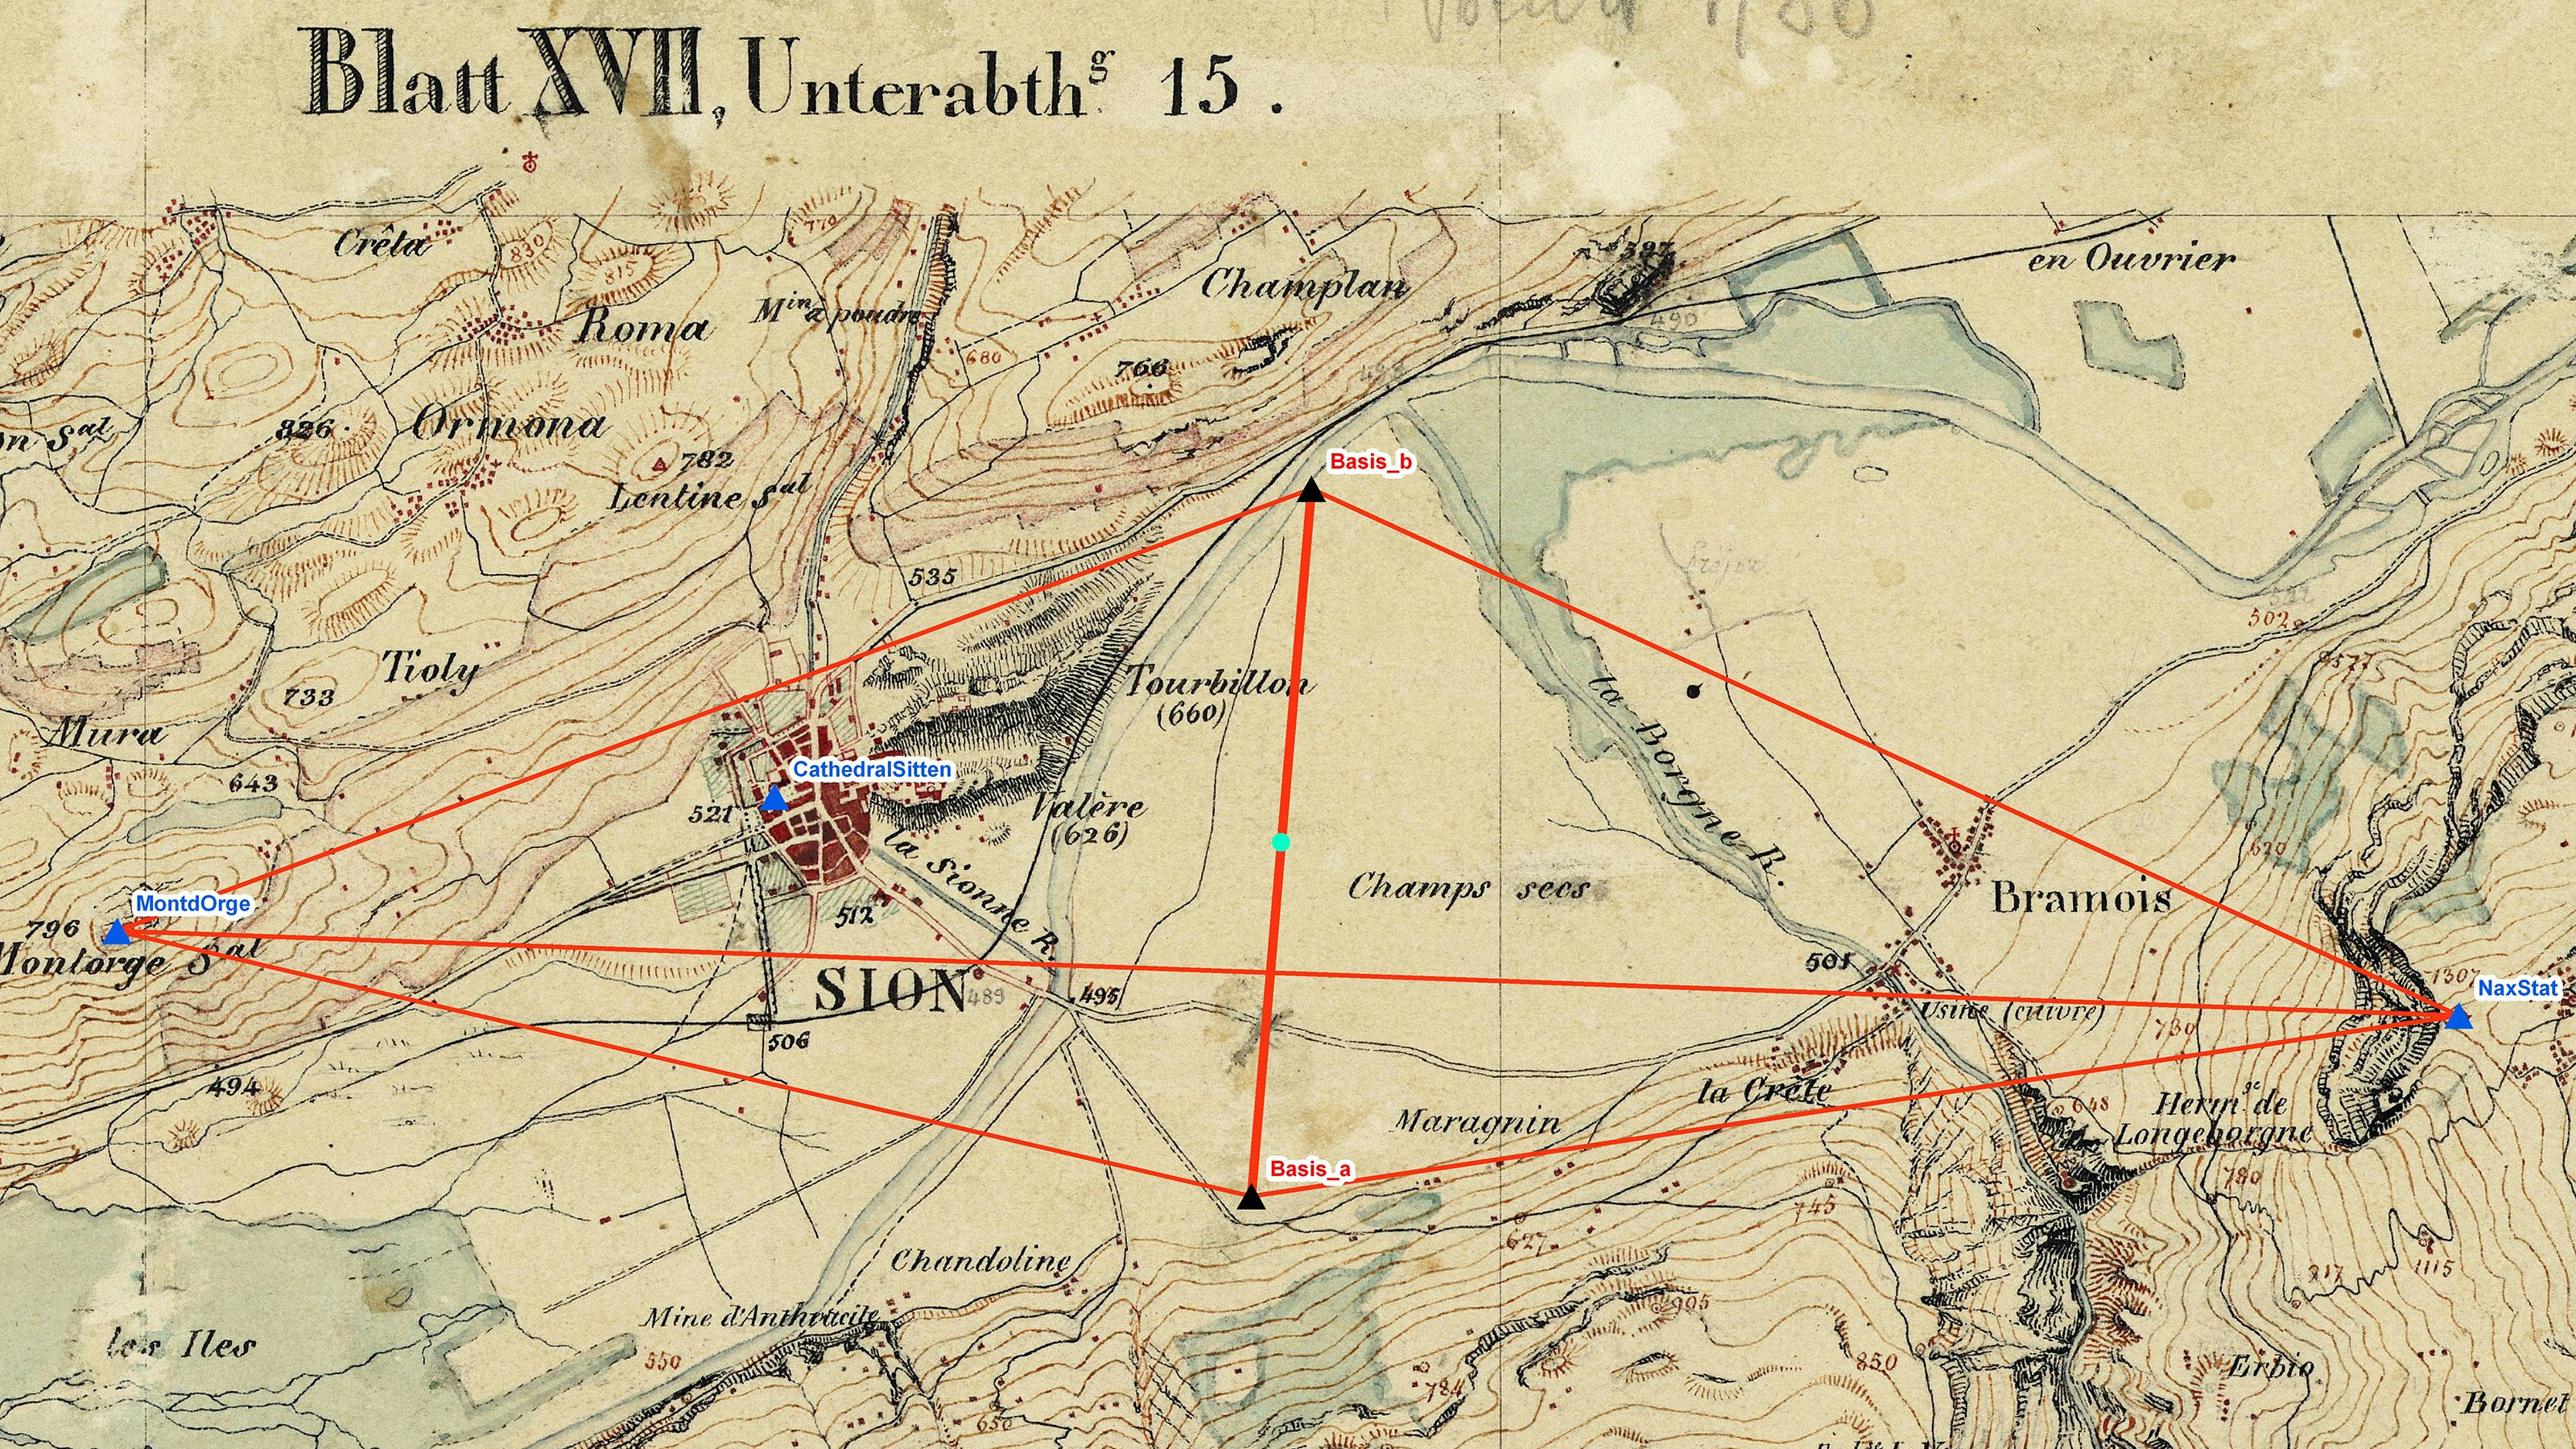 Die Basis von Sion aus dem Jahr 1831 und ihre Übertragung auf die benachbarten Triangulationspunkte Mont d’Orge – Nax im Jahr 1831.